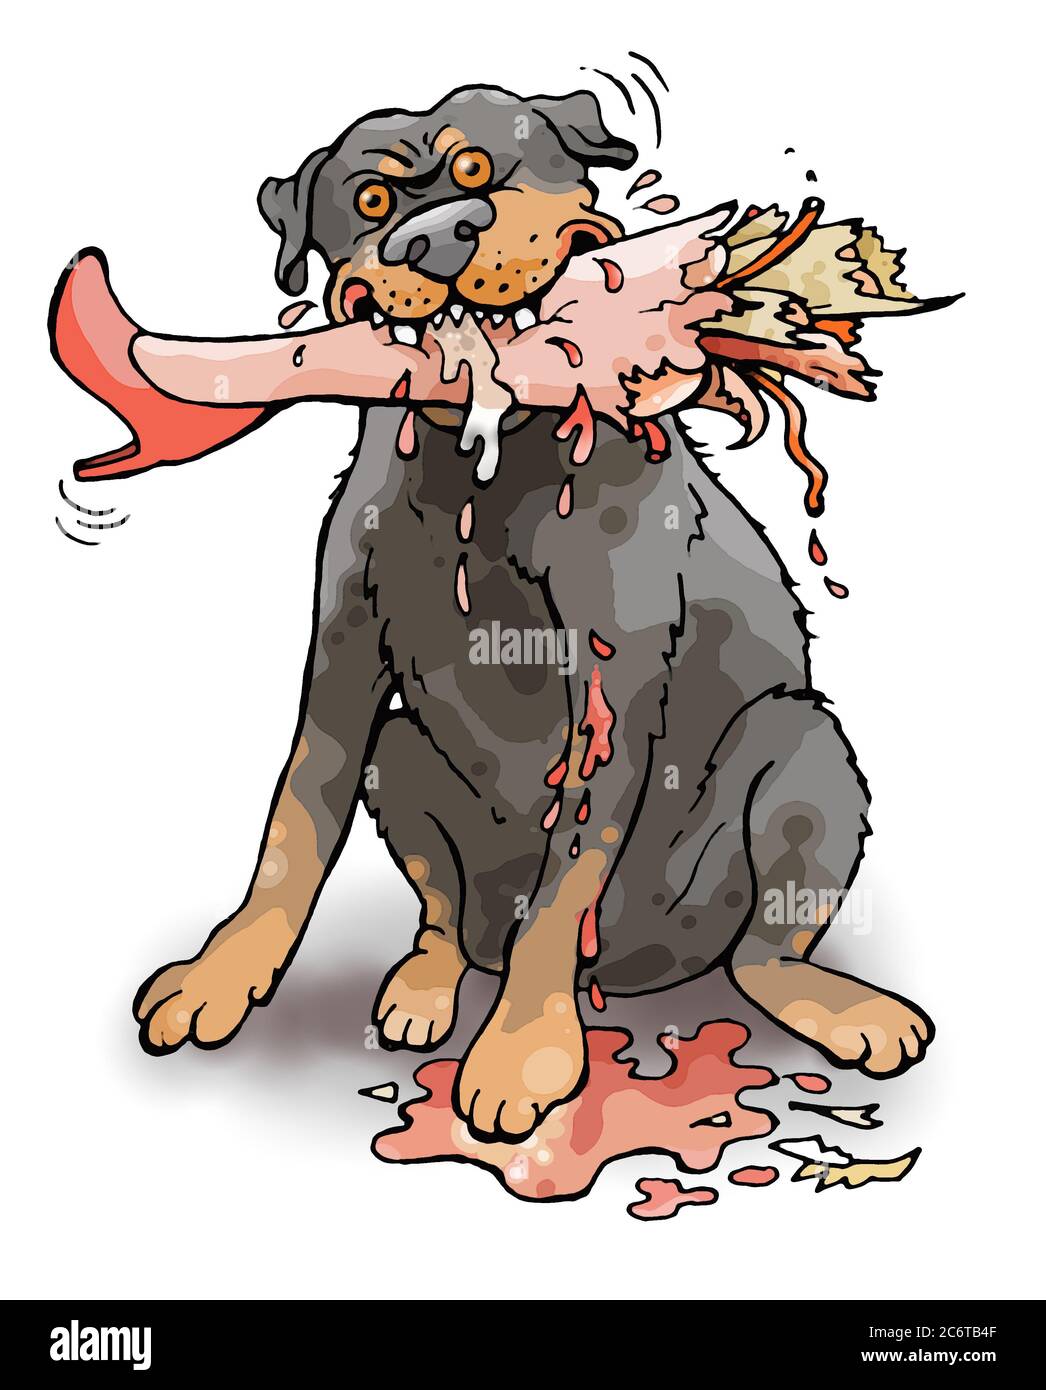 Rottweiler agressif, chien en bas d'une jambe d'une femme avec une chaussure rouge avec talon à talons aiguilles. L'animal a la jambe sanglante dans sa bouche Banque D'Images